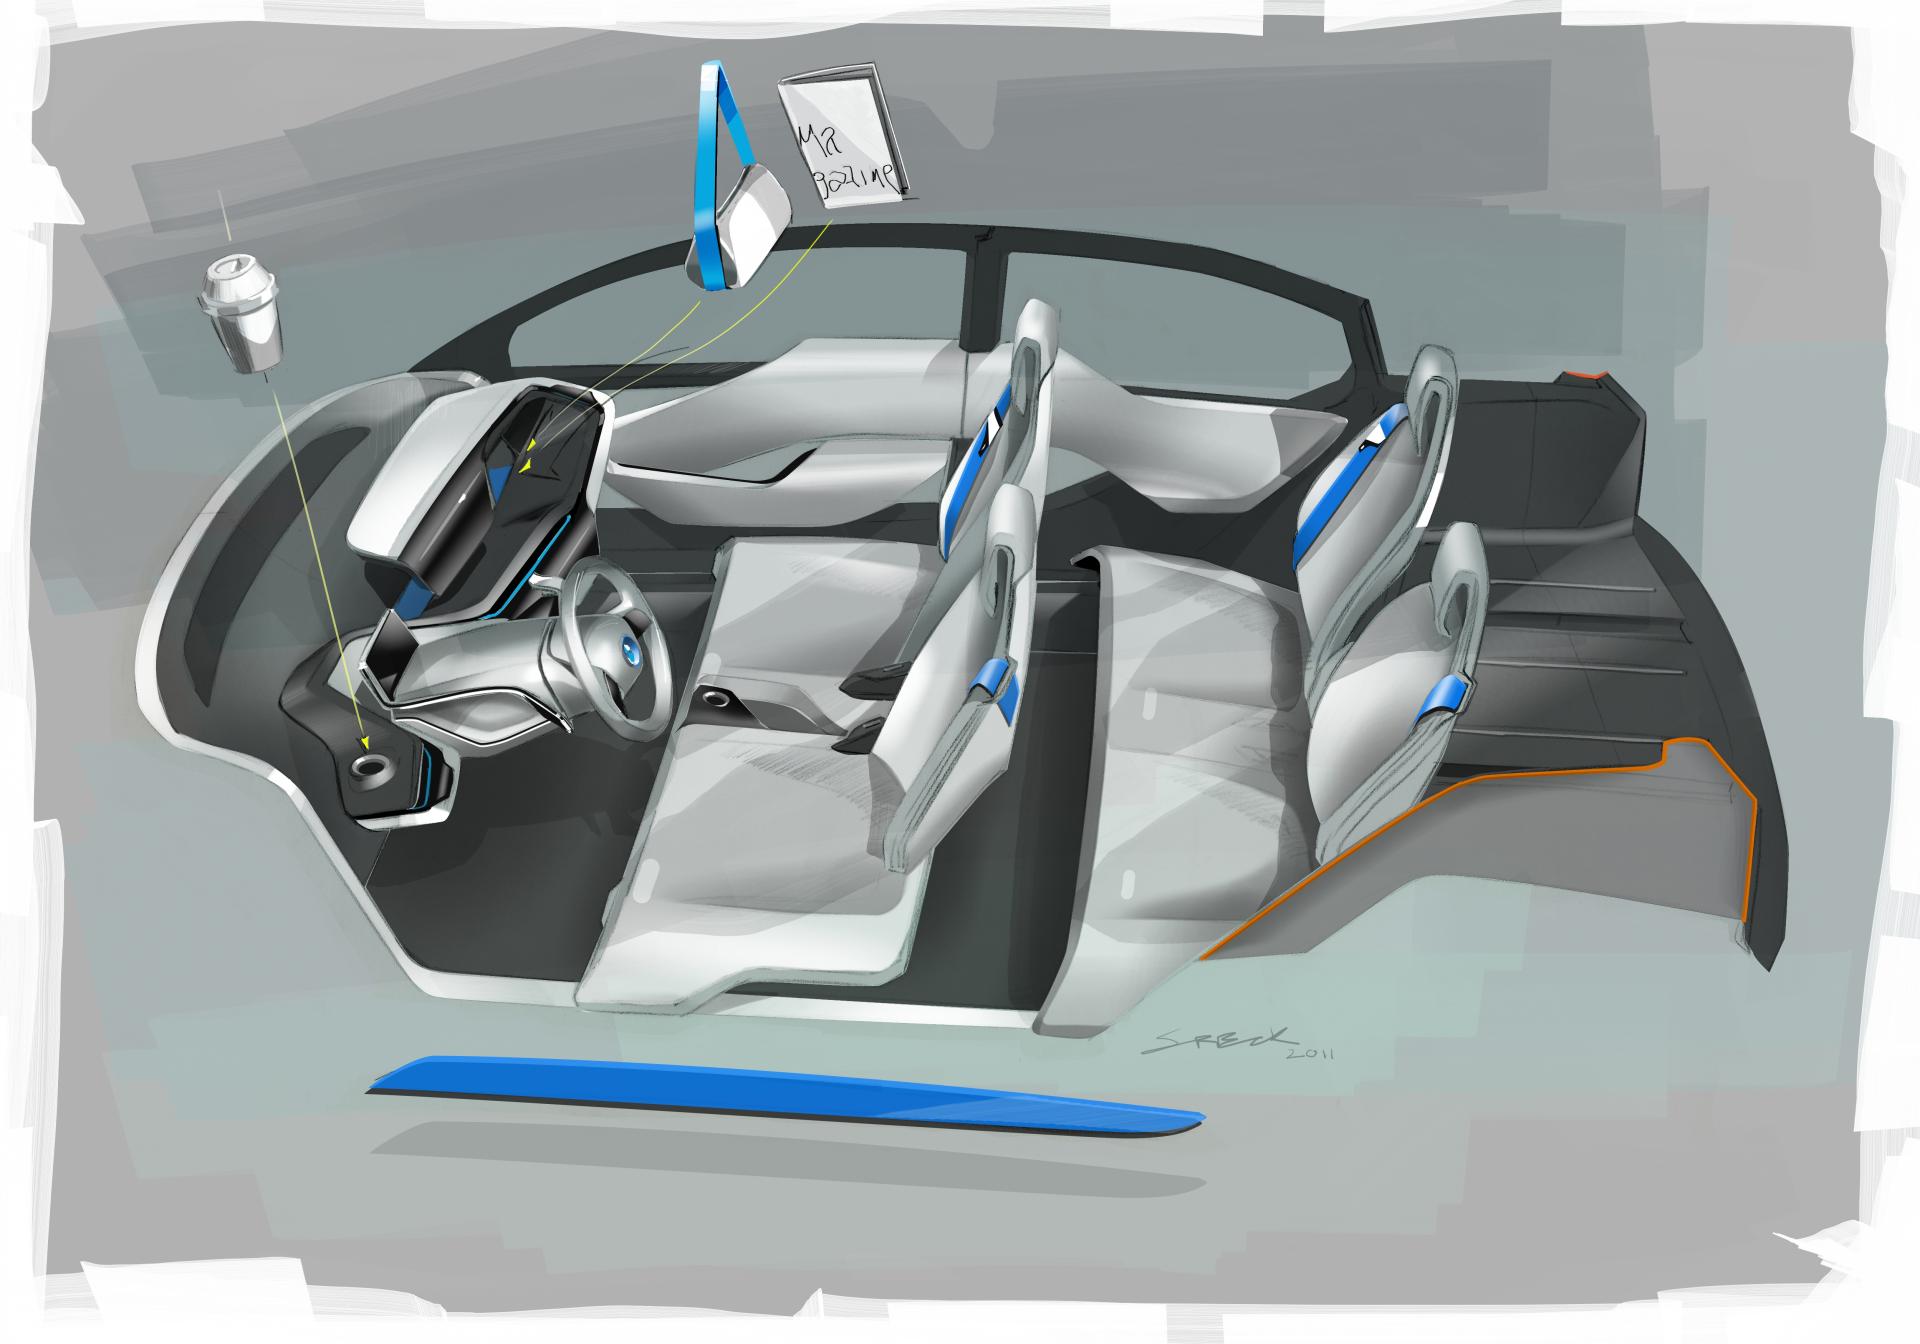 2012 BMW i3 Concept